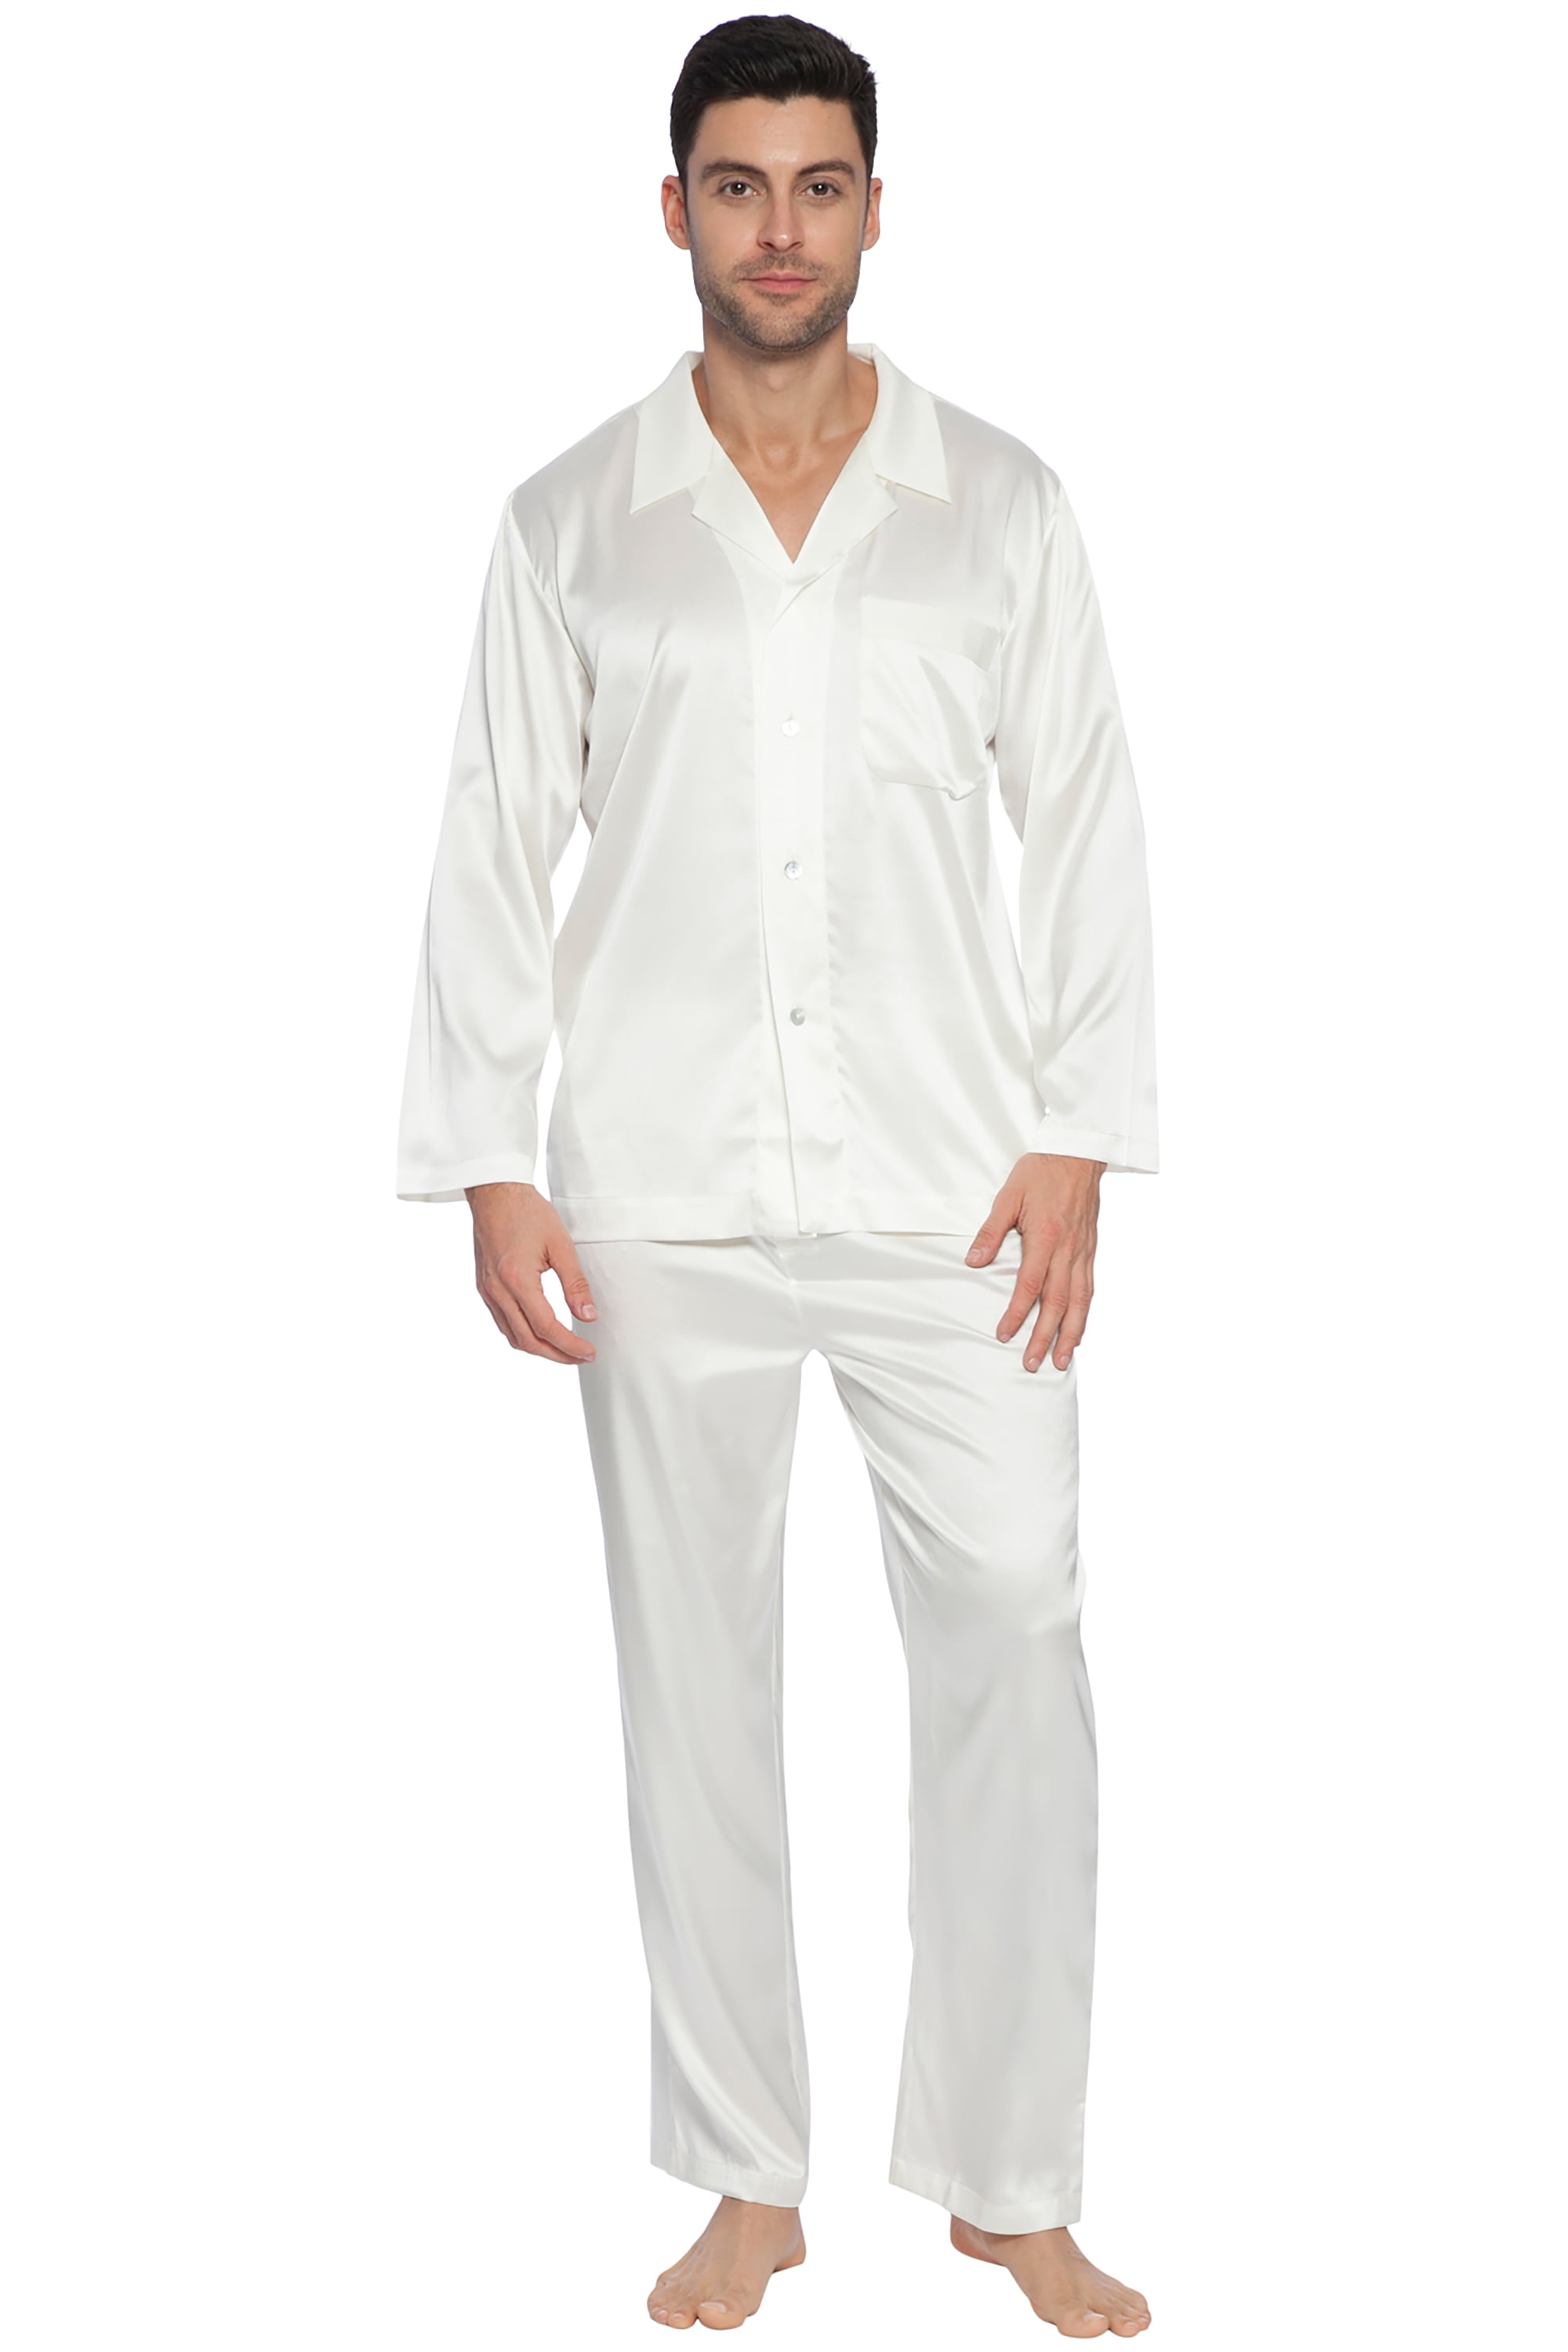 Intimo - INTIMO Mens Classic Stretch Silk Pajama Set Sleepwear ...